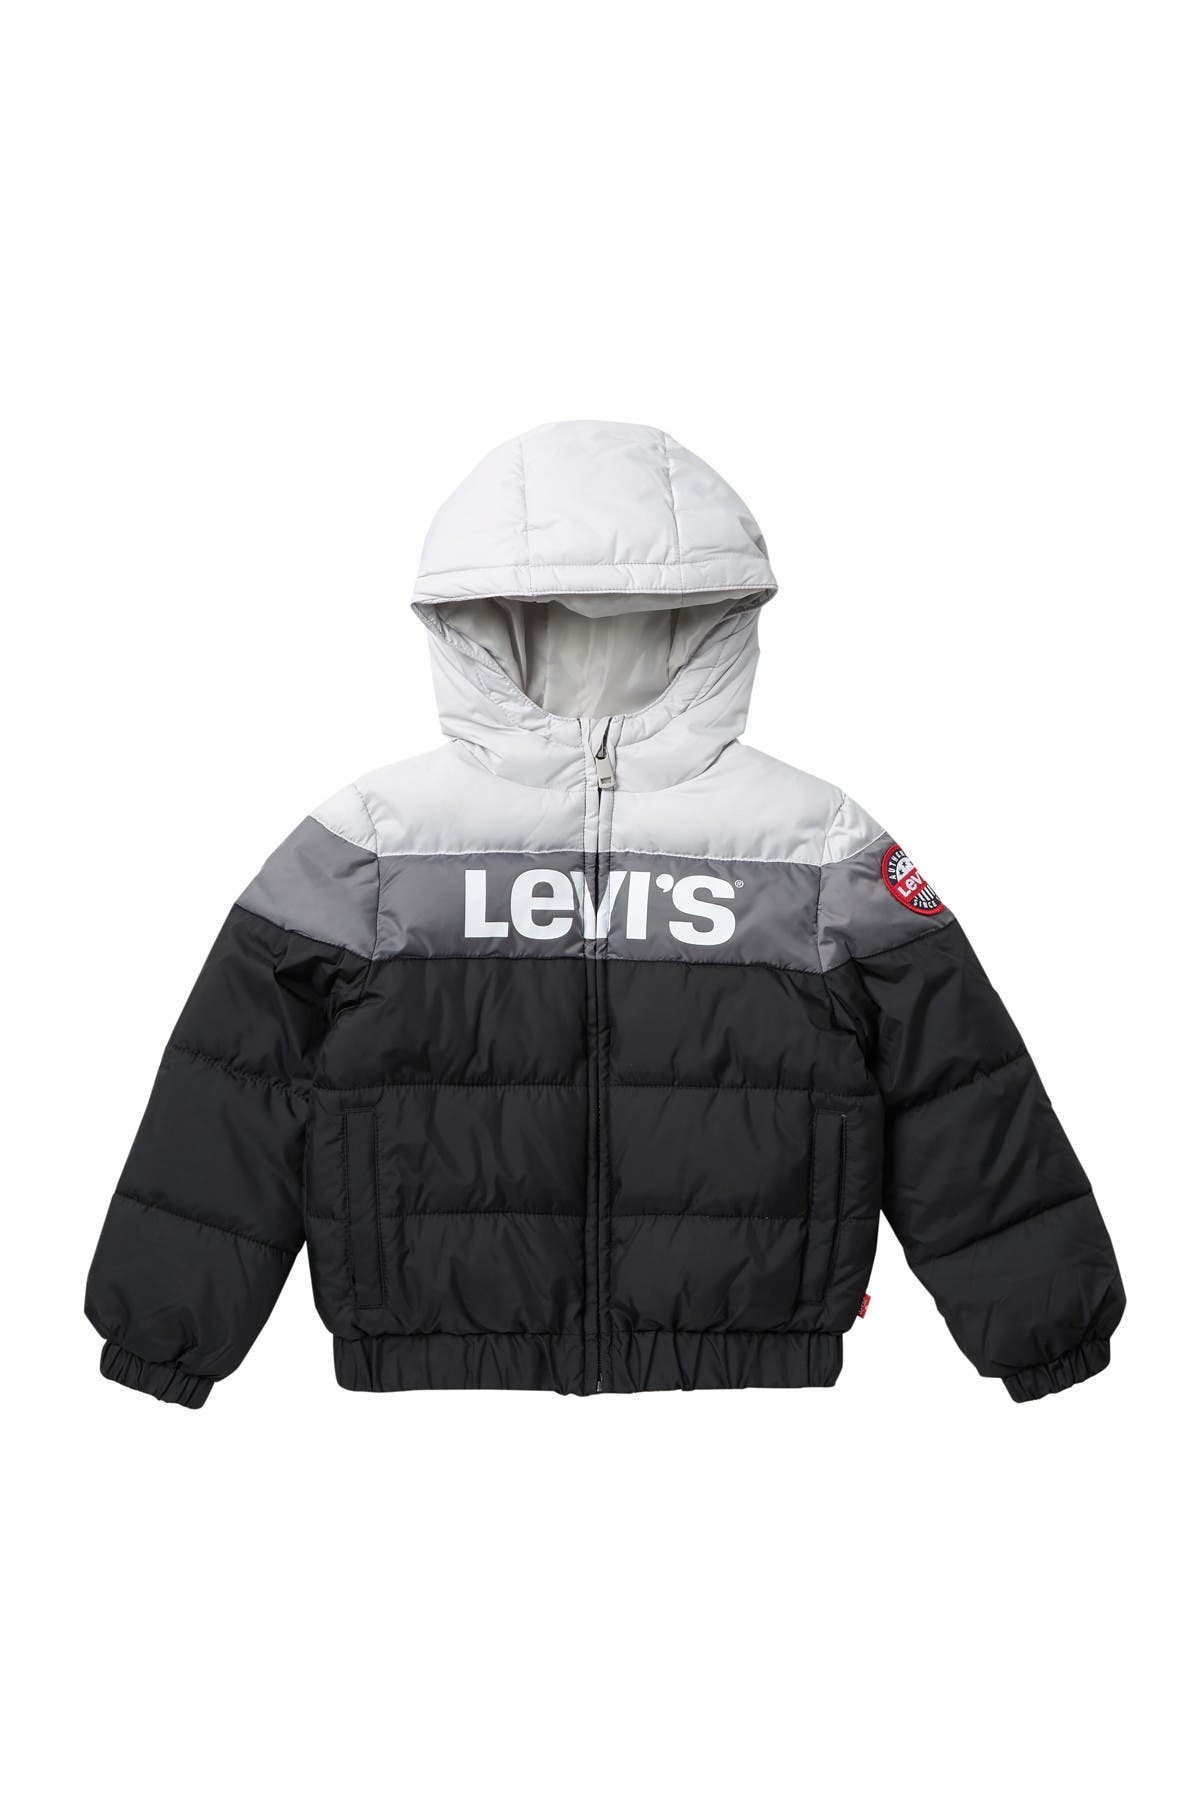 levi's water repellent jacket